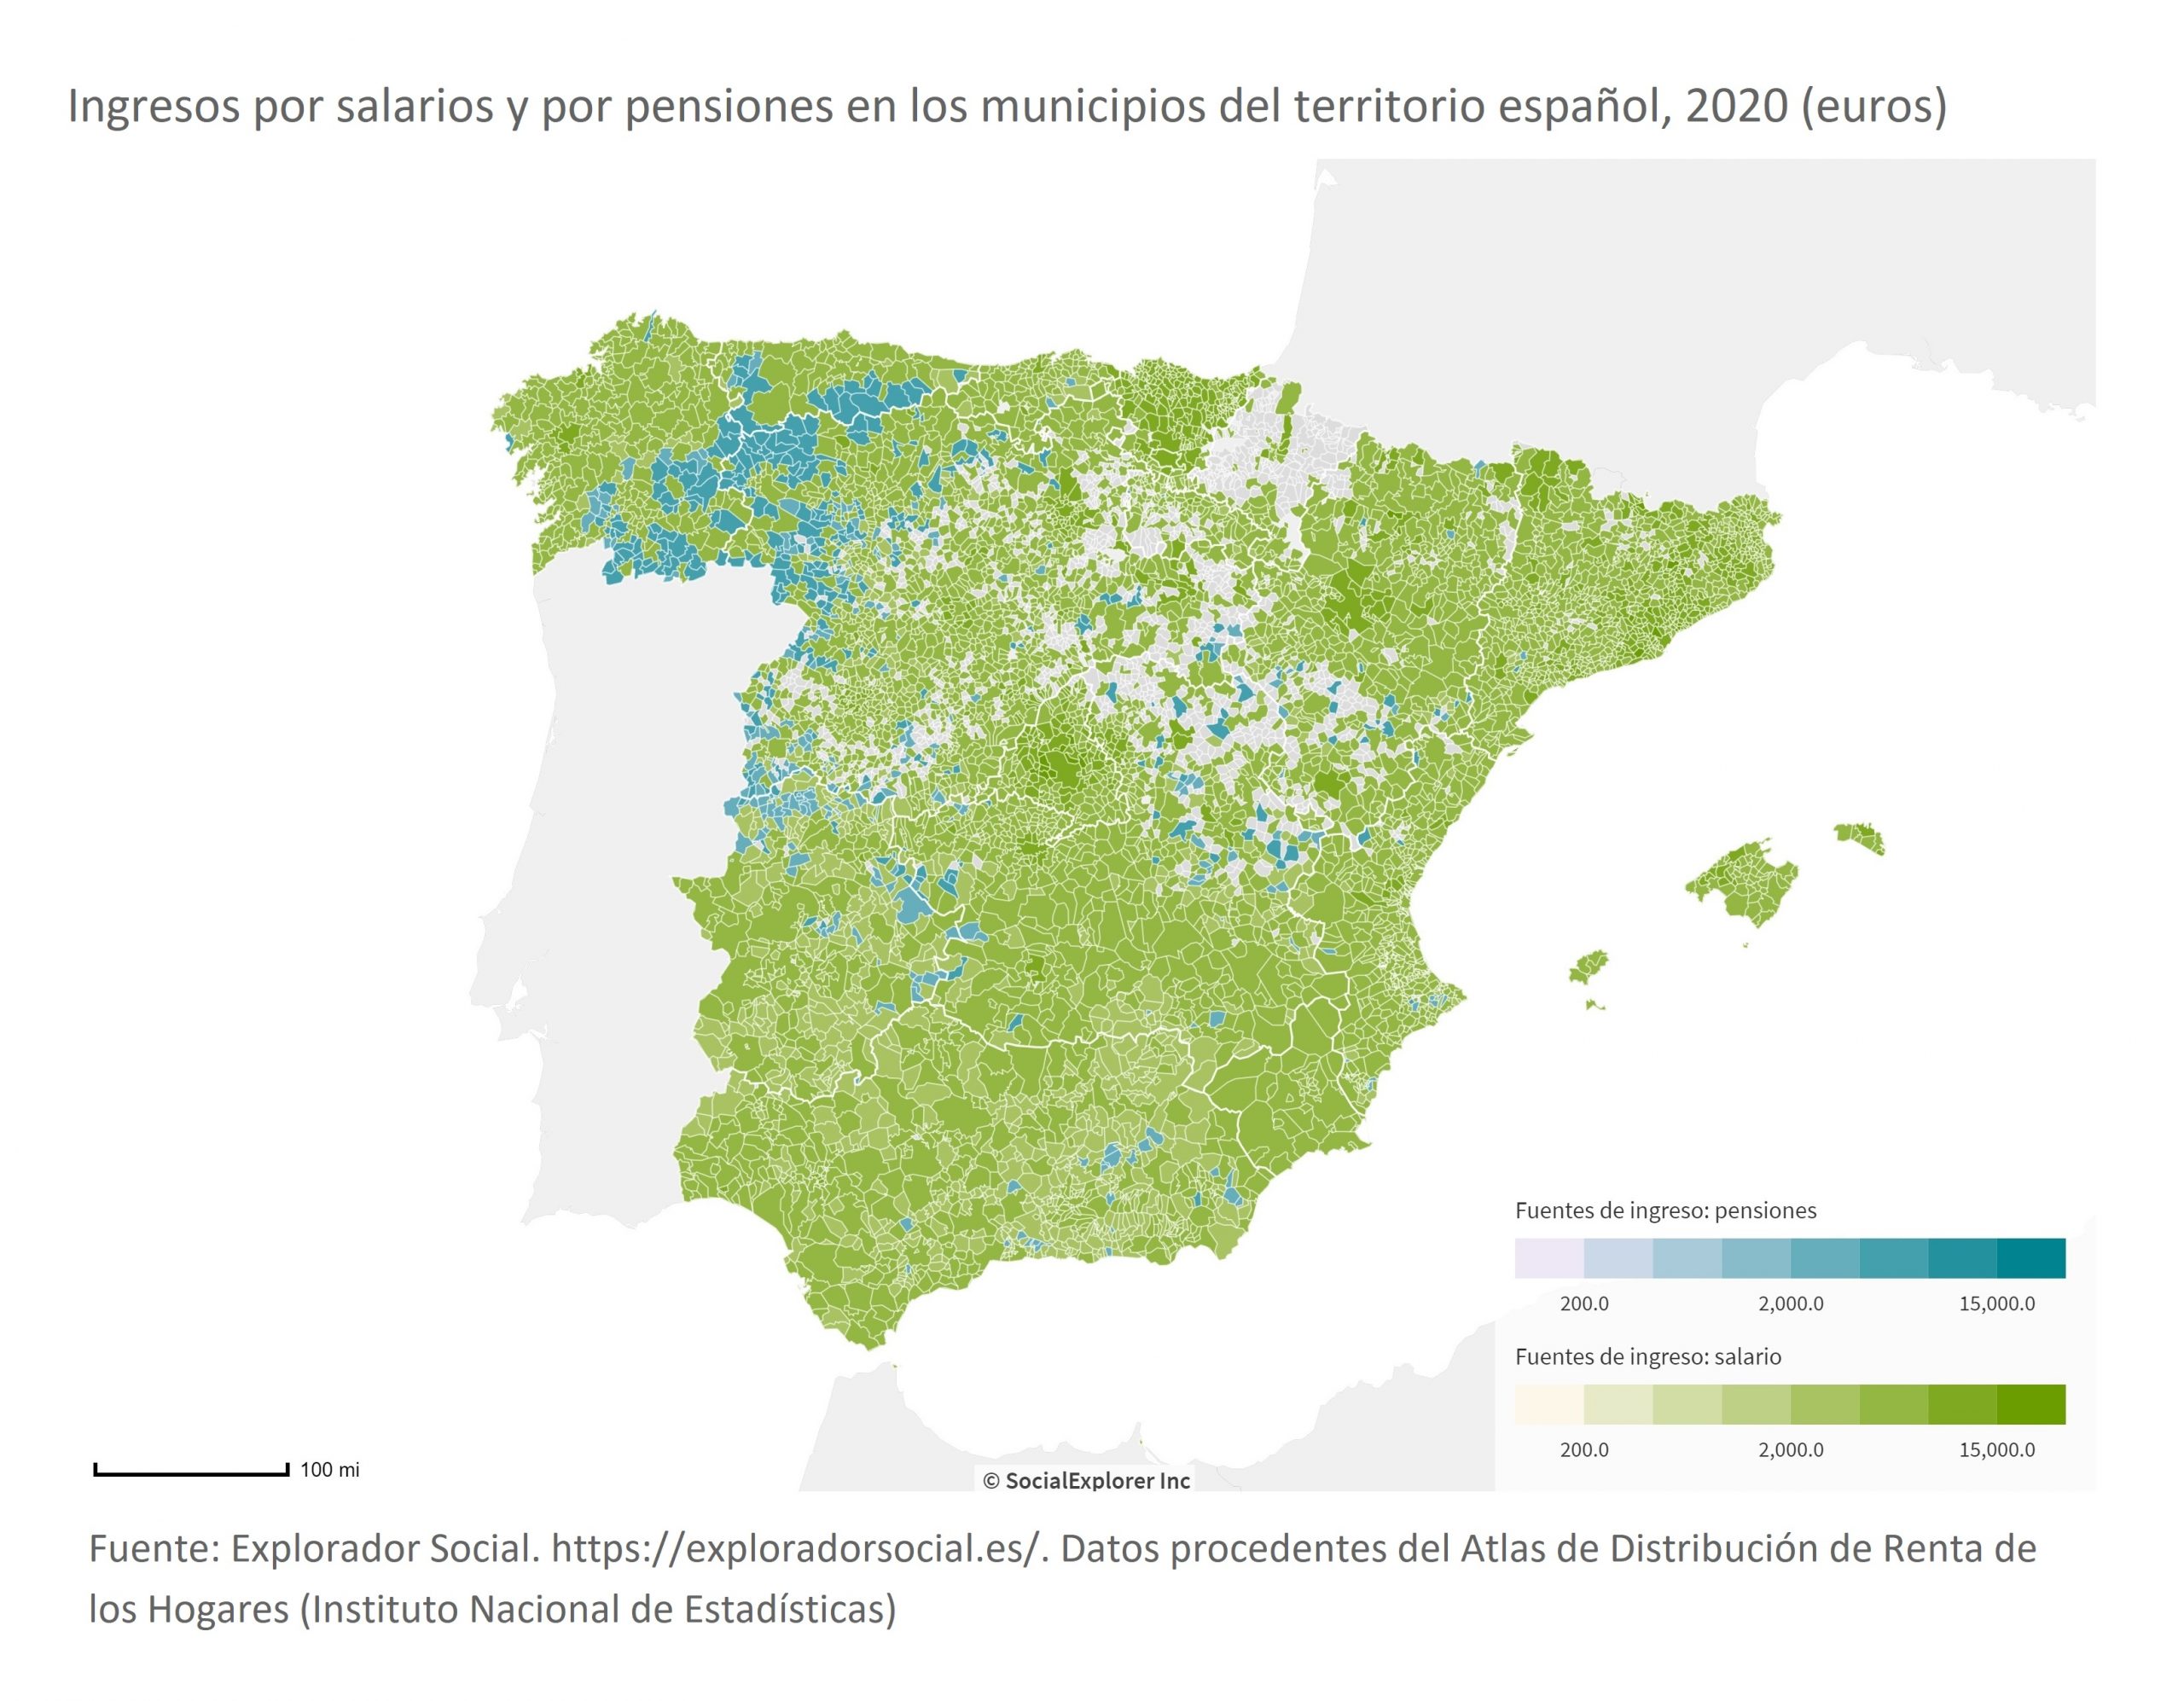 ¡Ojo al Dato! ¿En qué municipios de España los ingresos por pensiones superan a los ingresos por salarios?